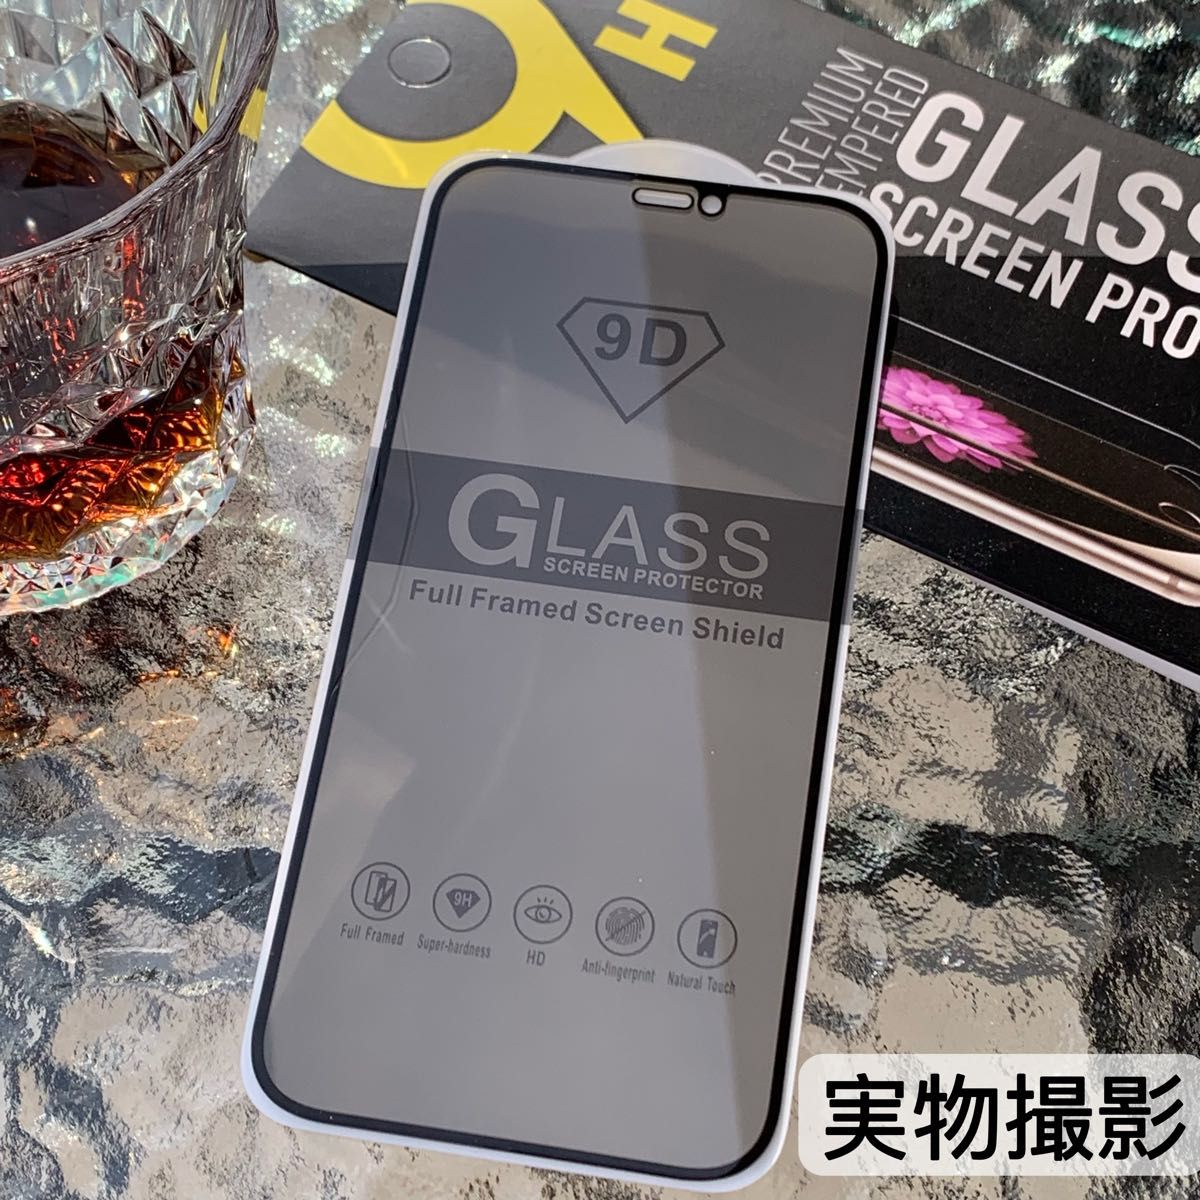 IPhoneX/Xs 覗き見防止 フィルム 二枚セット  強化ガラスフィルム 強化ガラス 液晶保護フィルム